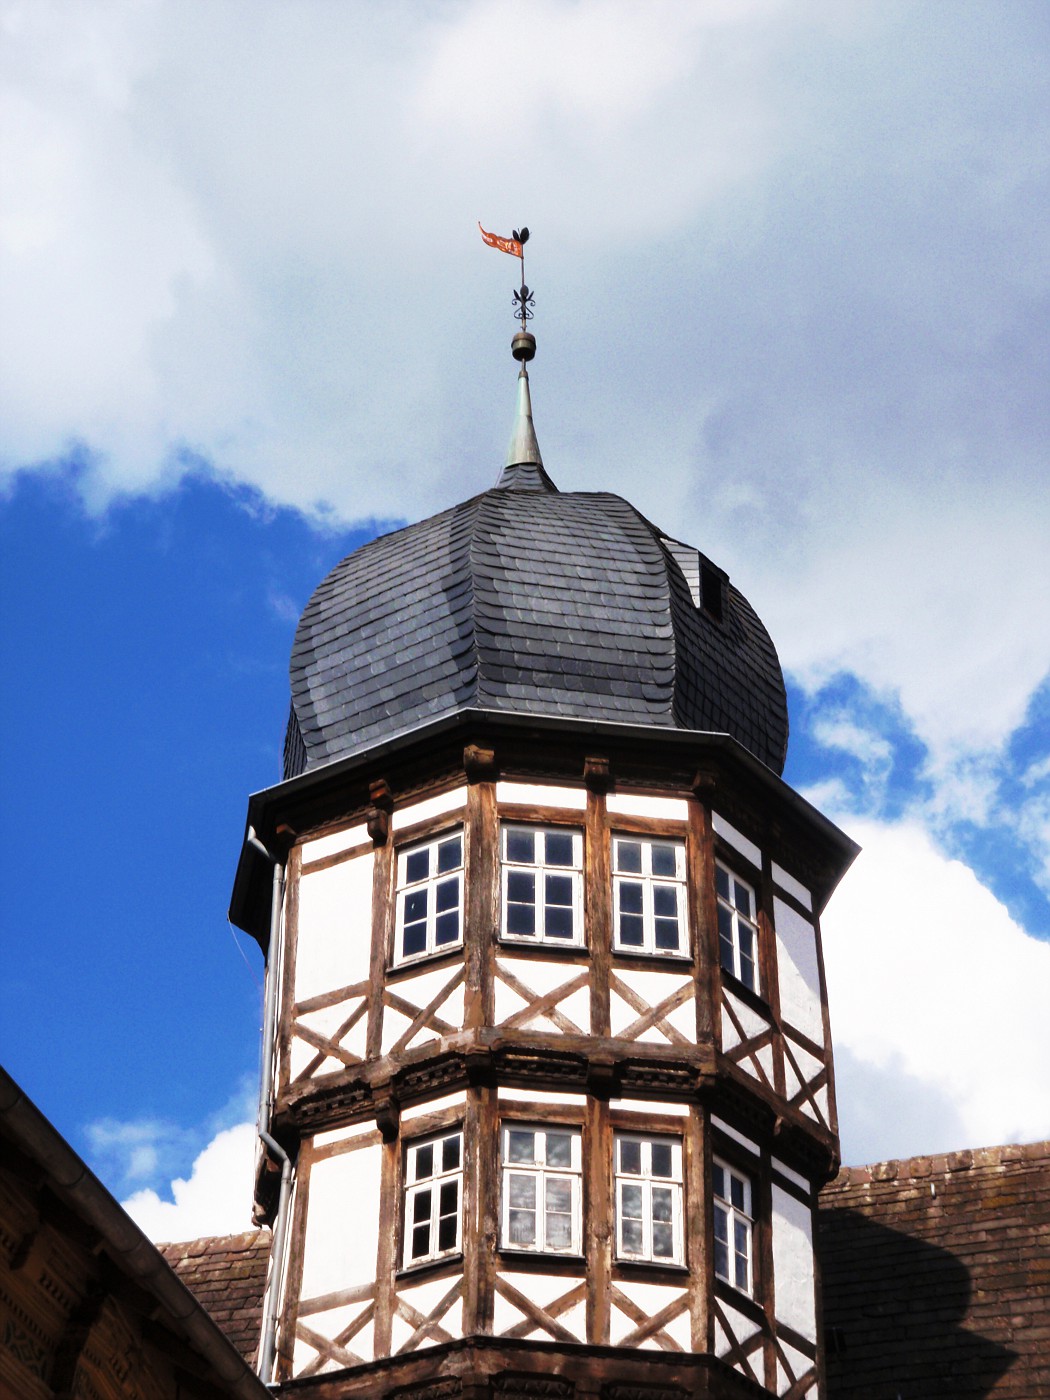 Schloss Bevern